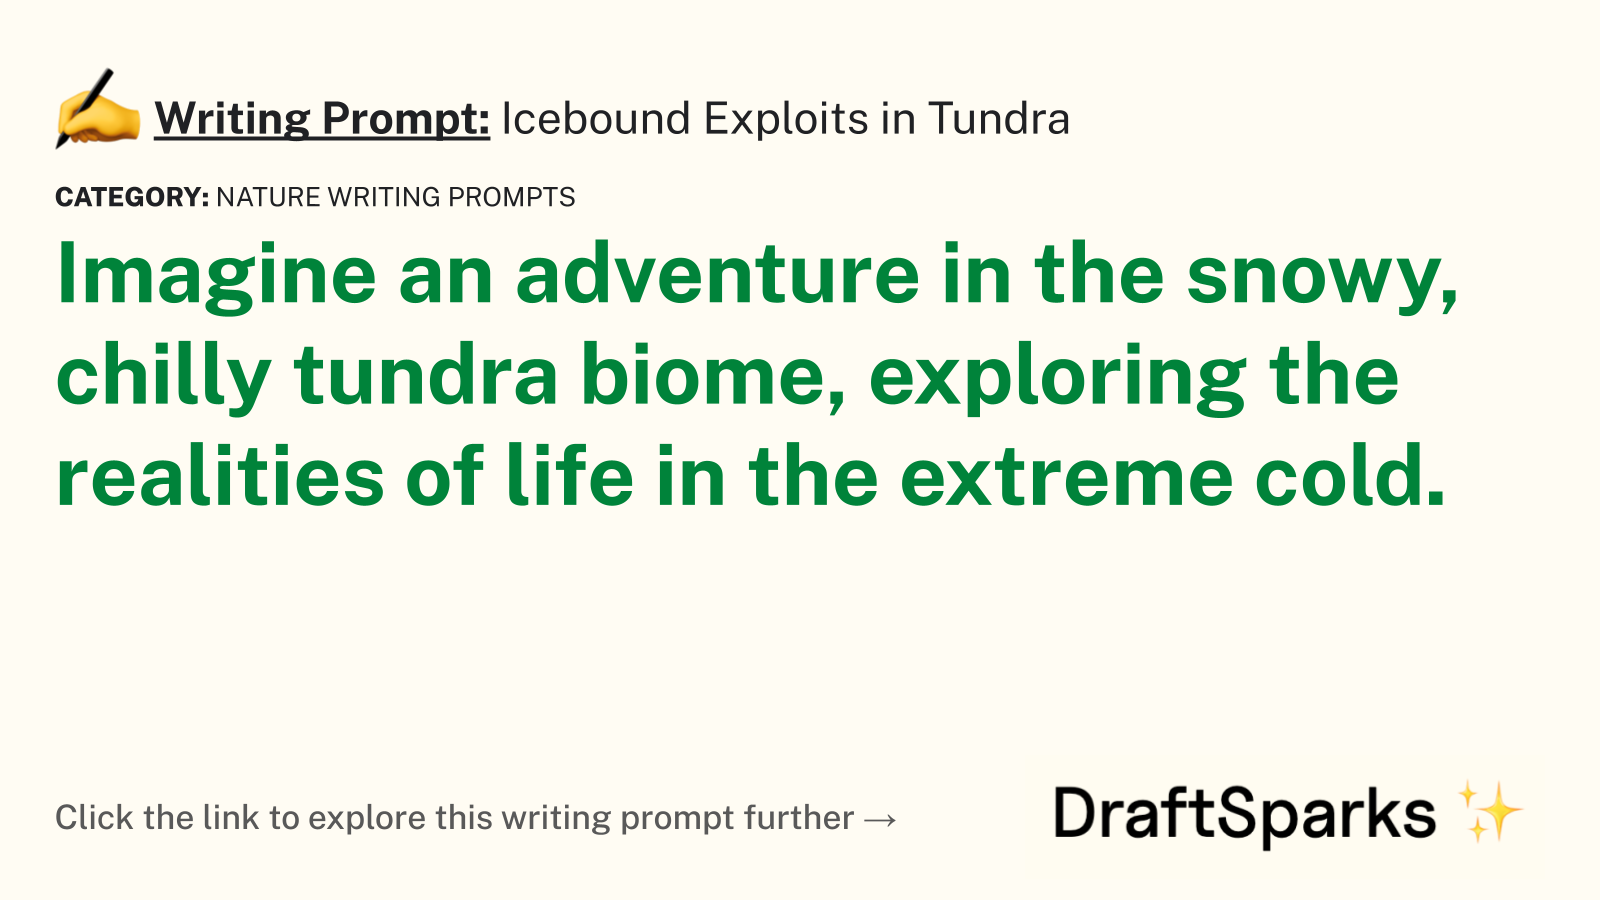 Icebound Exploits in Tundra